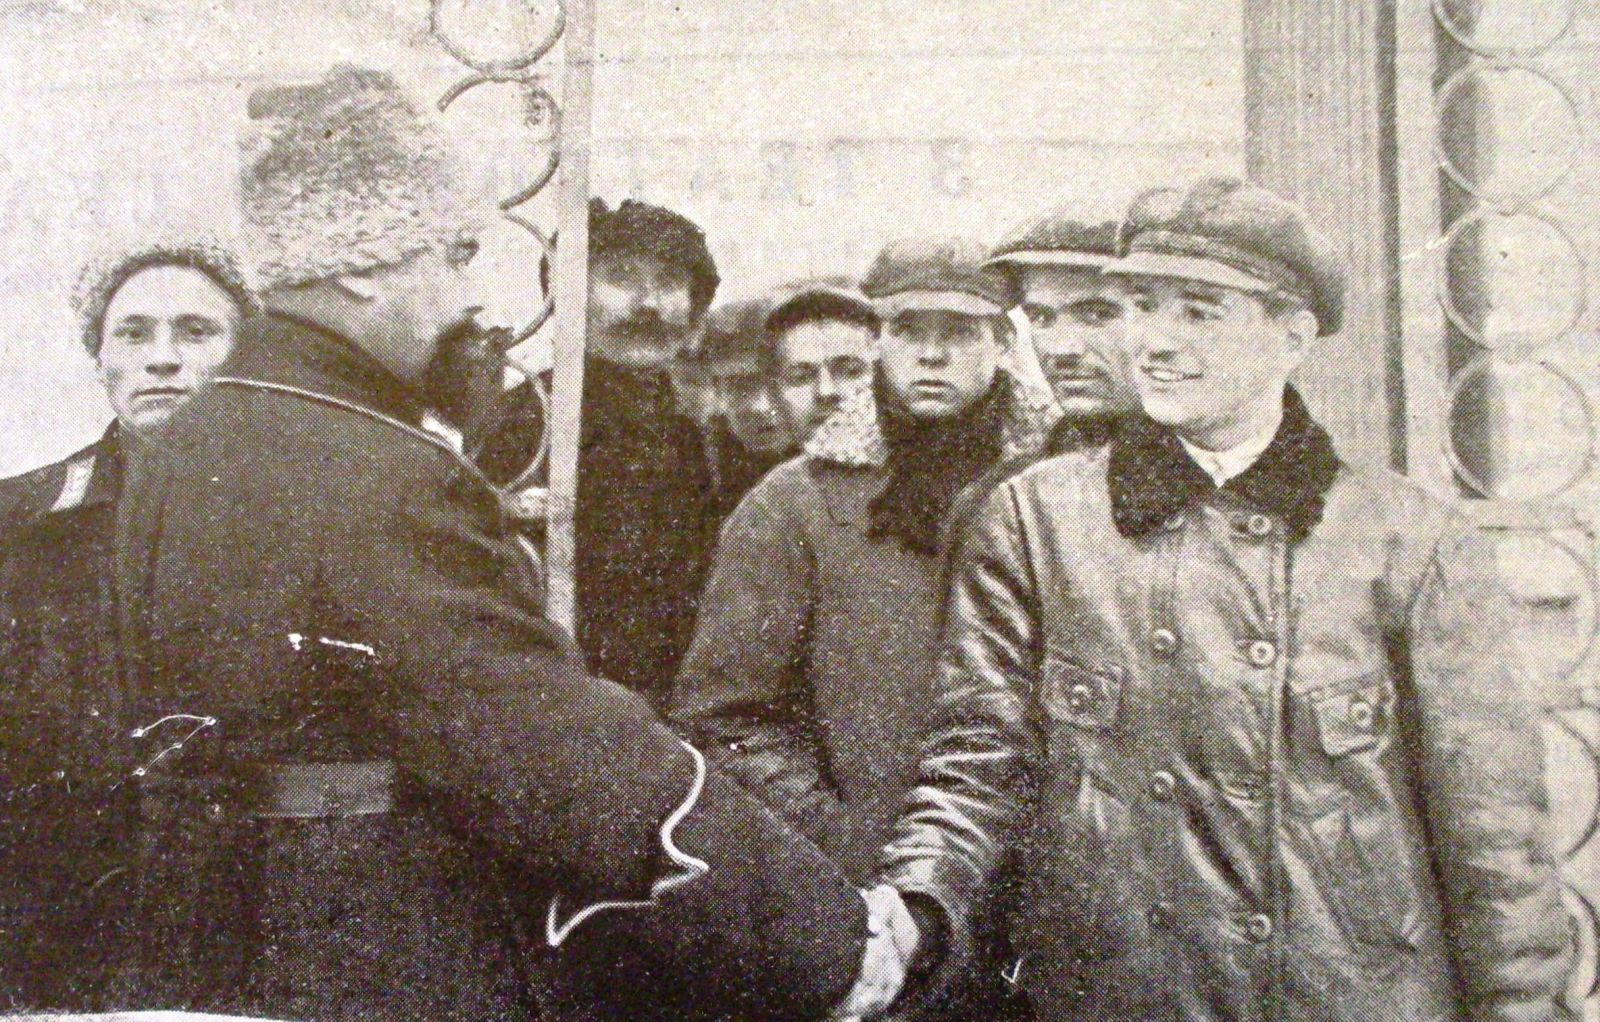 Постановочне фото 1927 року: начальник БУПРу бажає звільненим щасливого життя. Того самого БУПРу, де сиділи колишні бойскаути